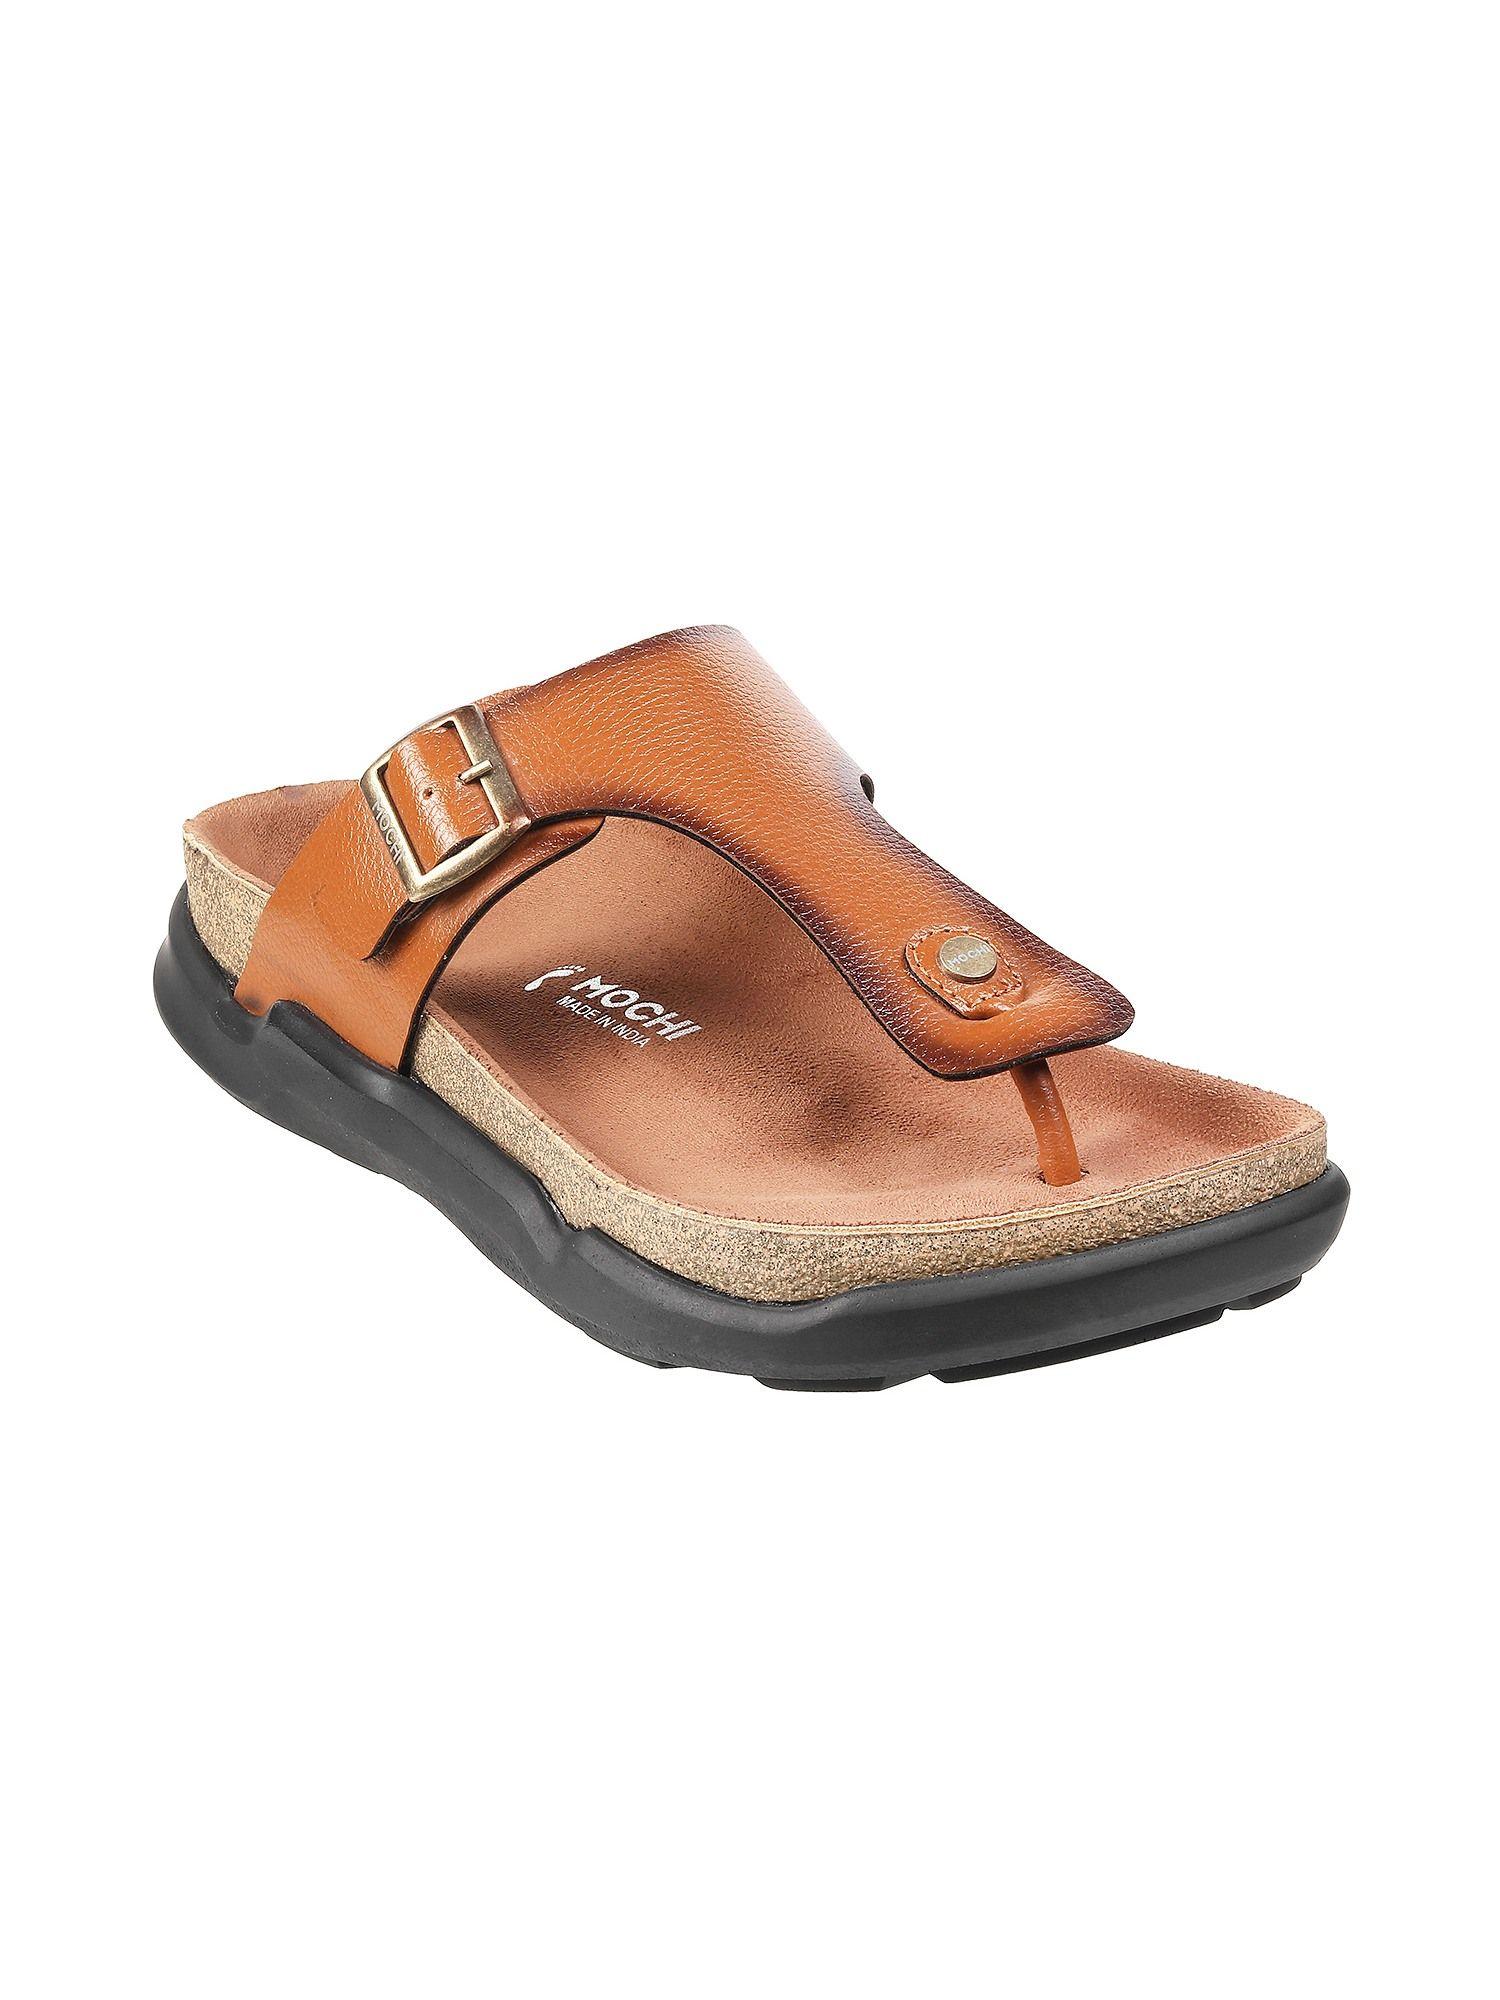 mens tan flat chappalsmochi textured tan sandals